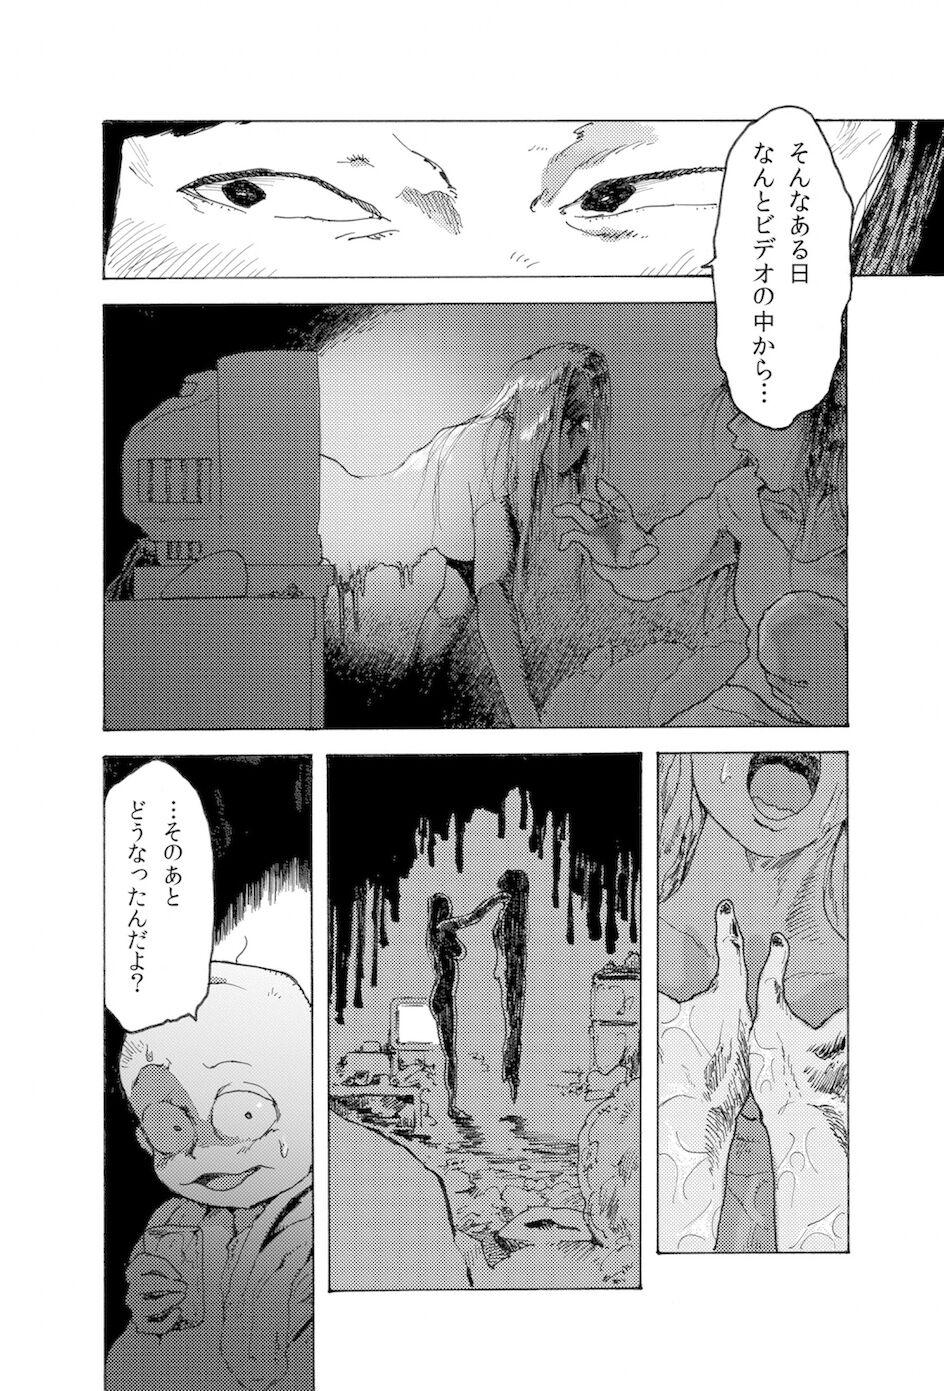 Teensex [Koshigerunasunibusu] WEB Sairoku [R18G] 'AIN'T SIX IS DEATH' - Osomatsu san Tetona - Page 3